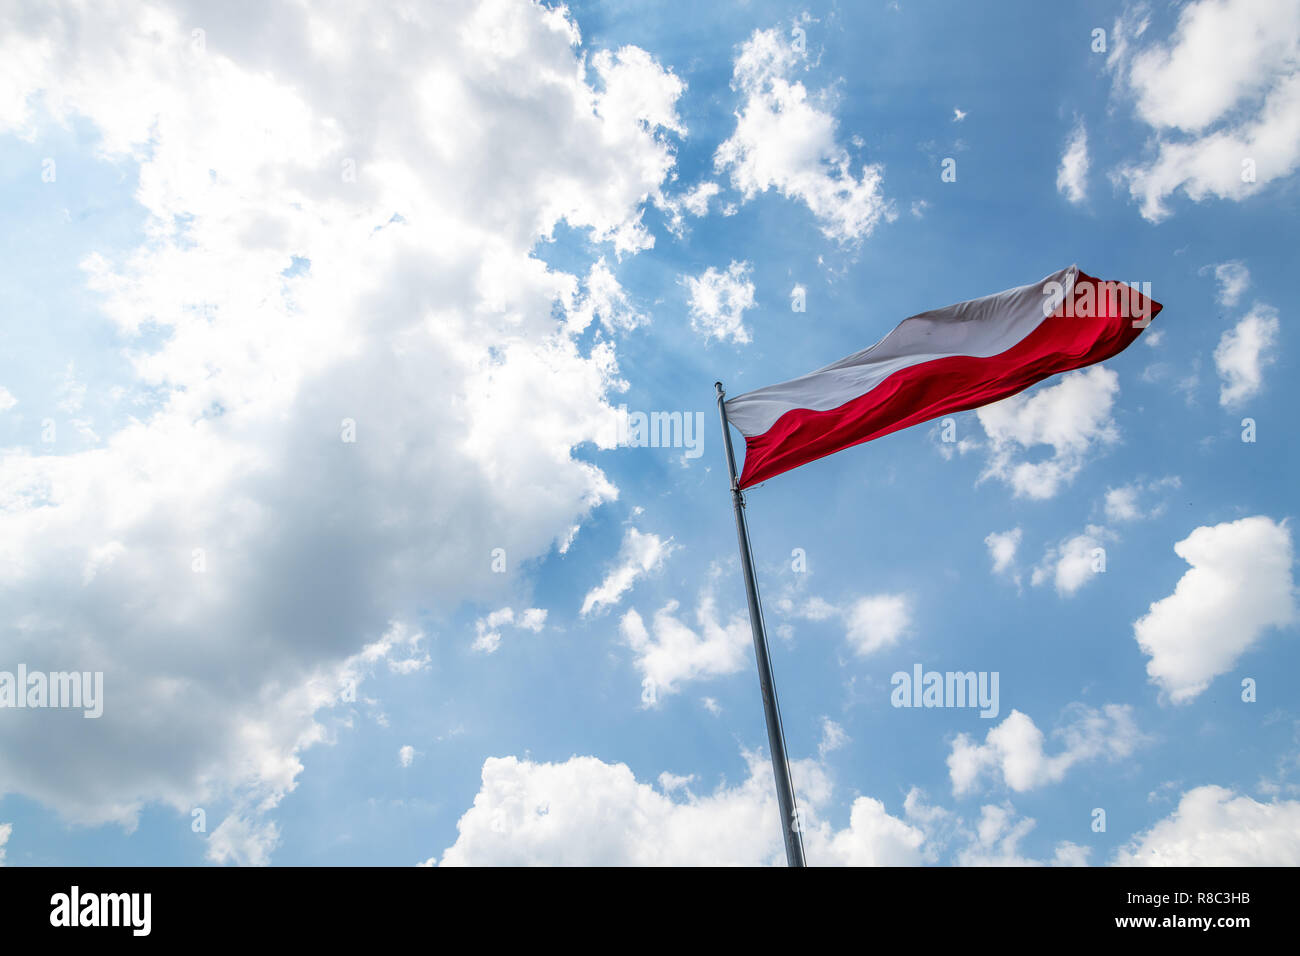 Le drapeau national de la Pologne à Checiny, Pologne Banque D'Images